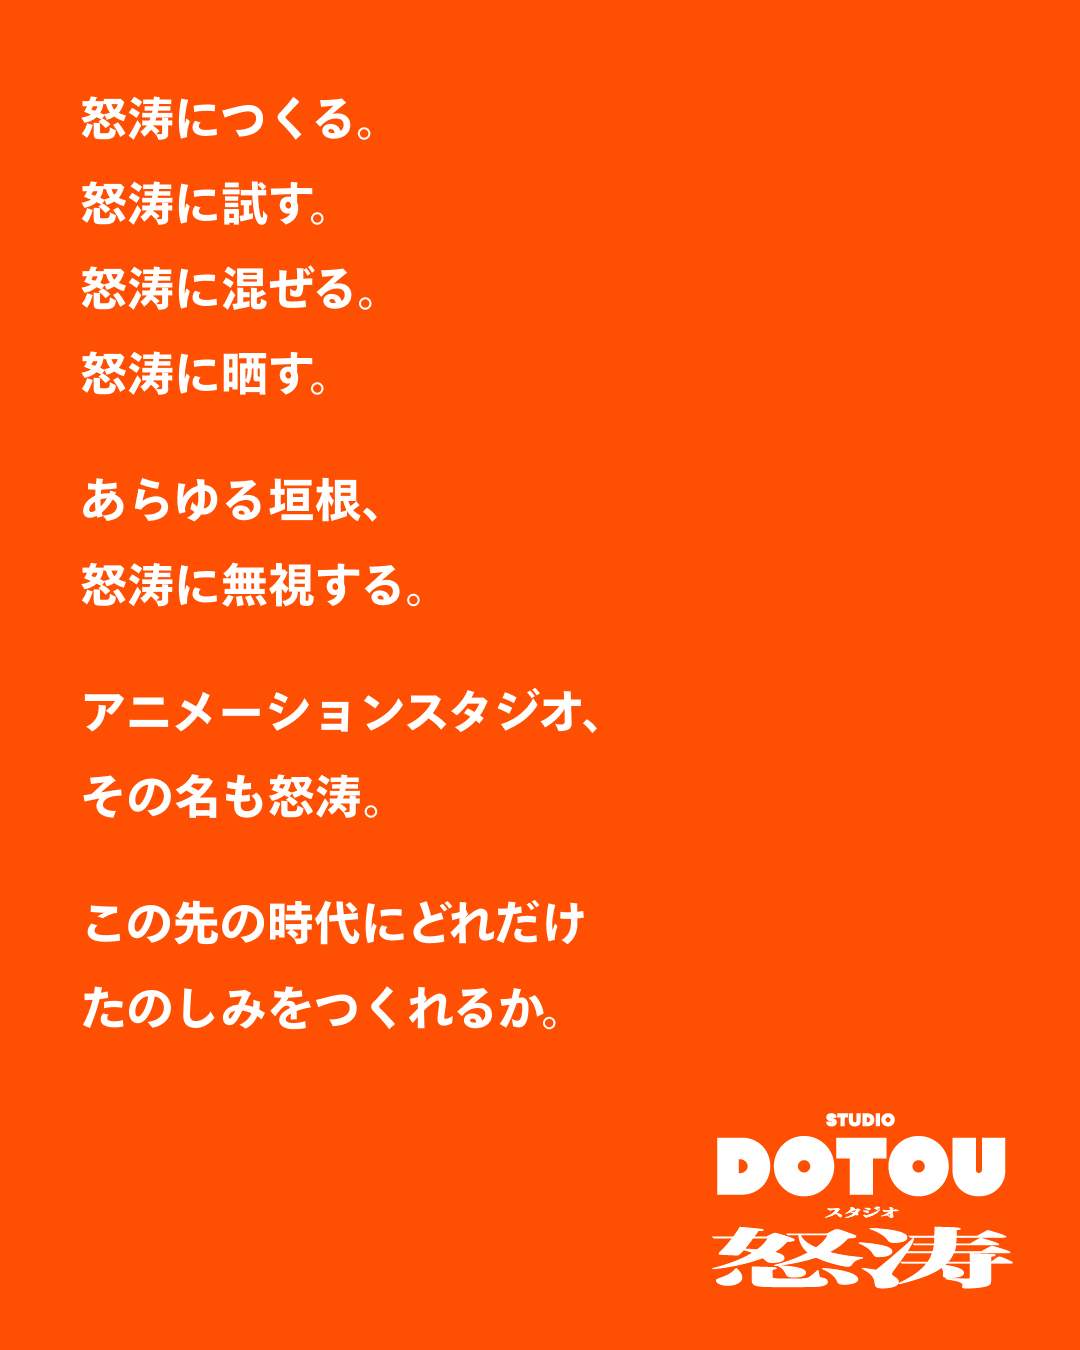 株式会社ポニーキャニオンが新アニメーションスタジオ「STUDIO DOTOU」と業務提携。オリジナル劇場アニメ『KI...